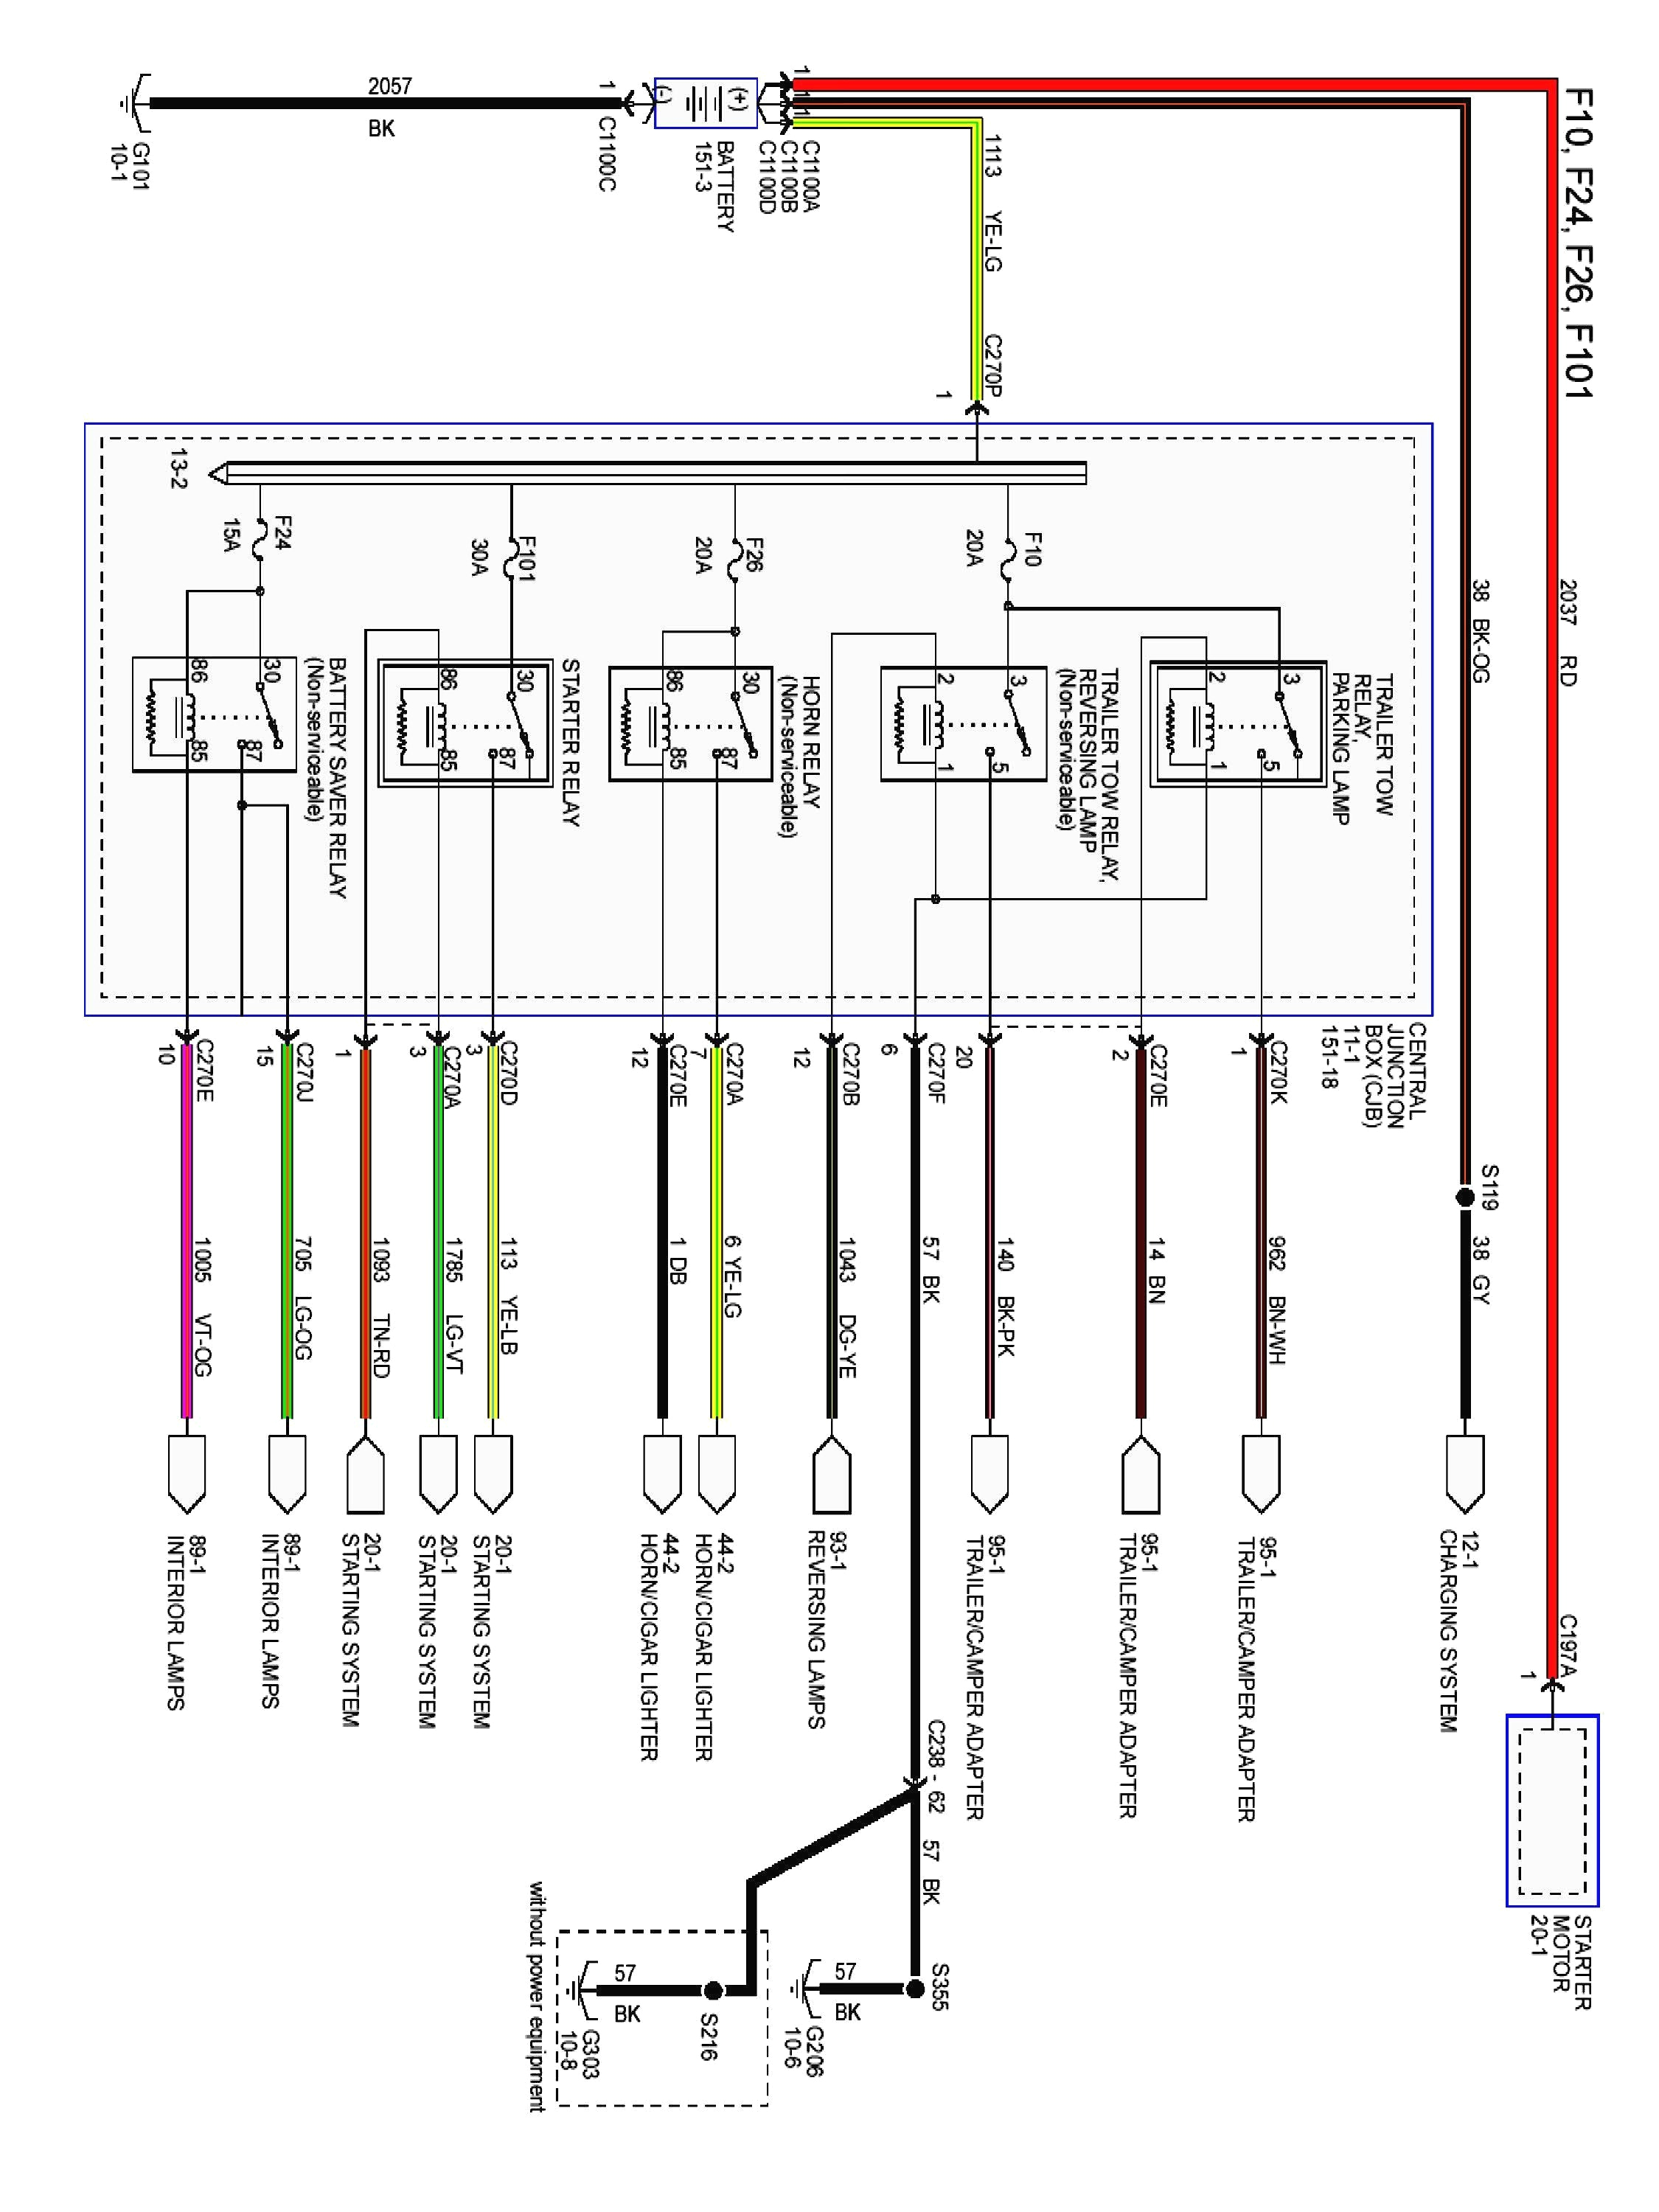 89 ford taurus wiring diagram wiring diagram toolbox 1989 ford taurus wiring diagram wiring diagram for